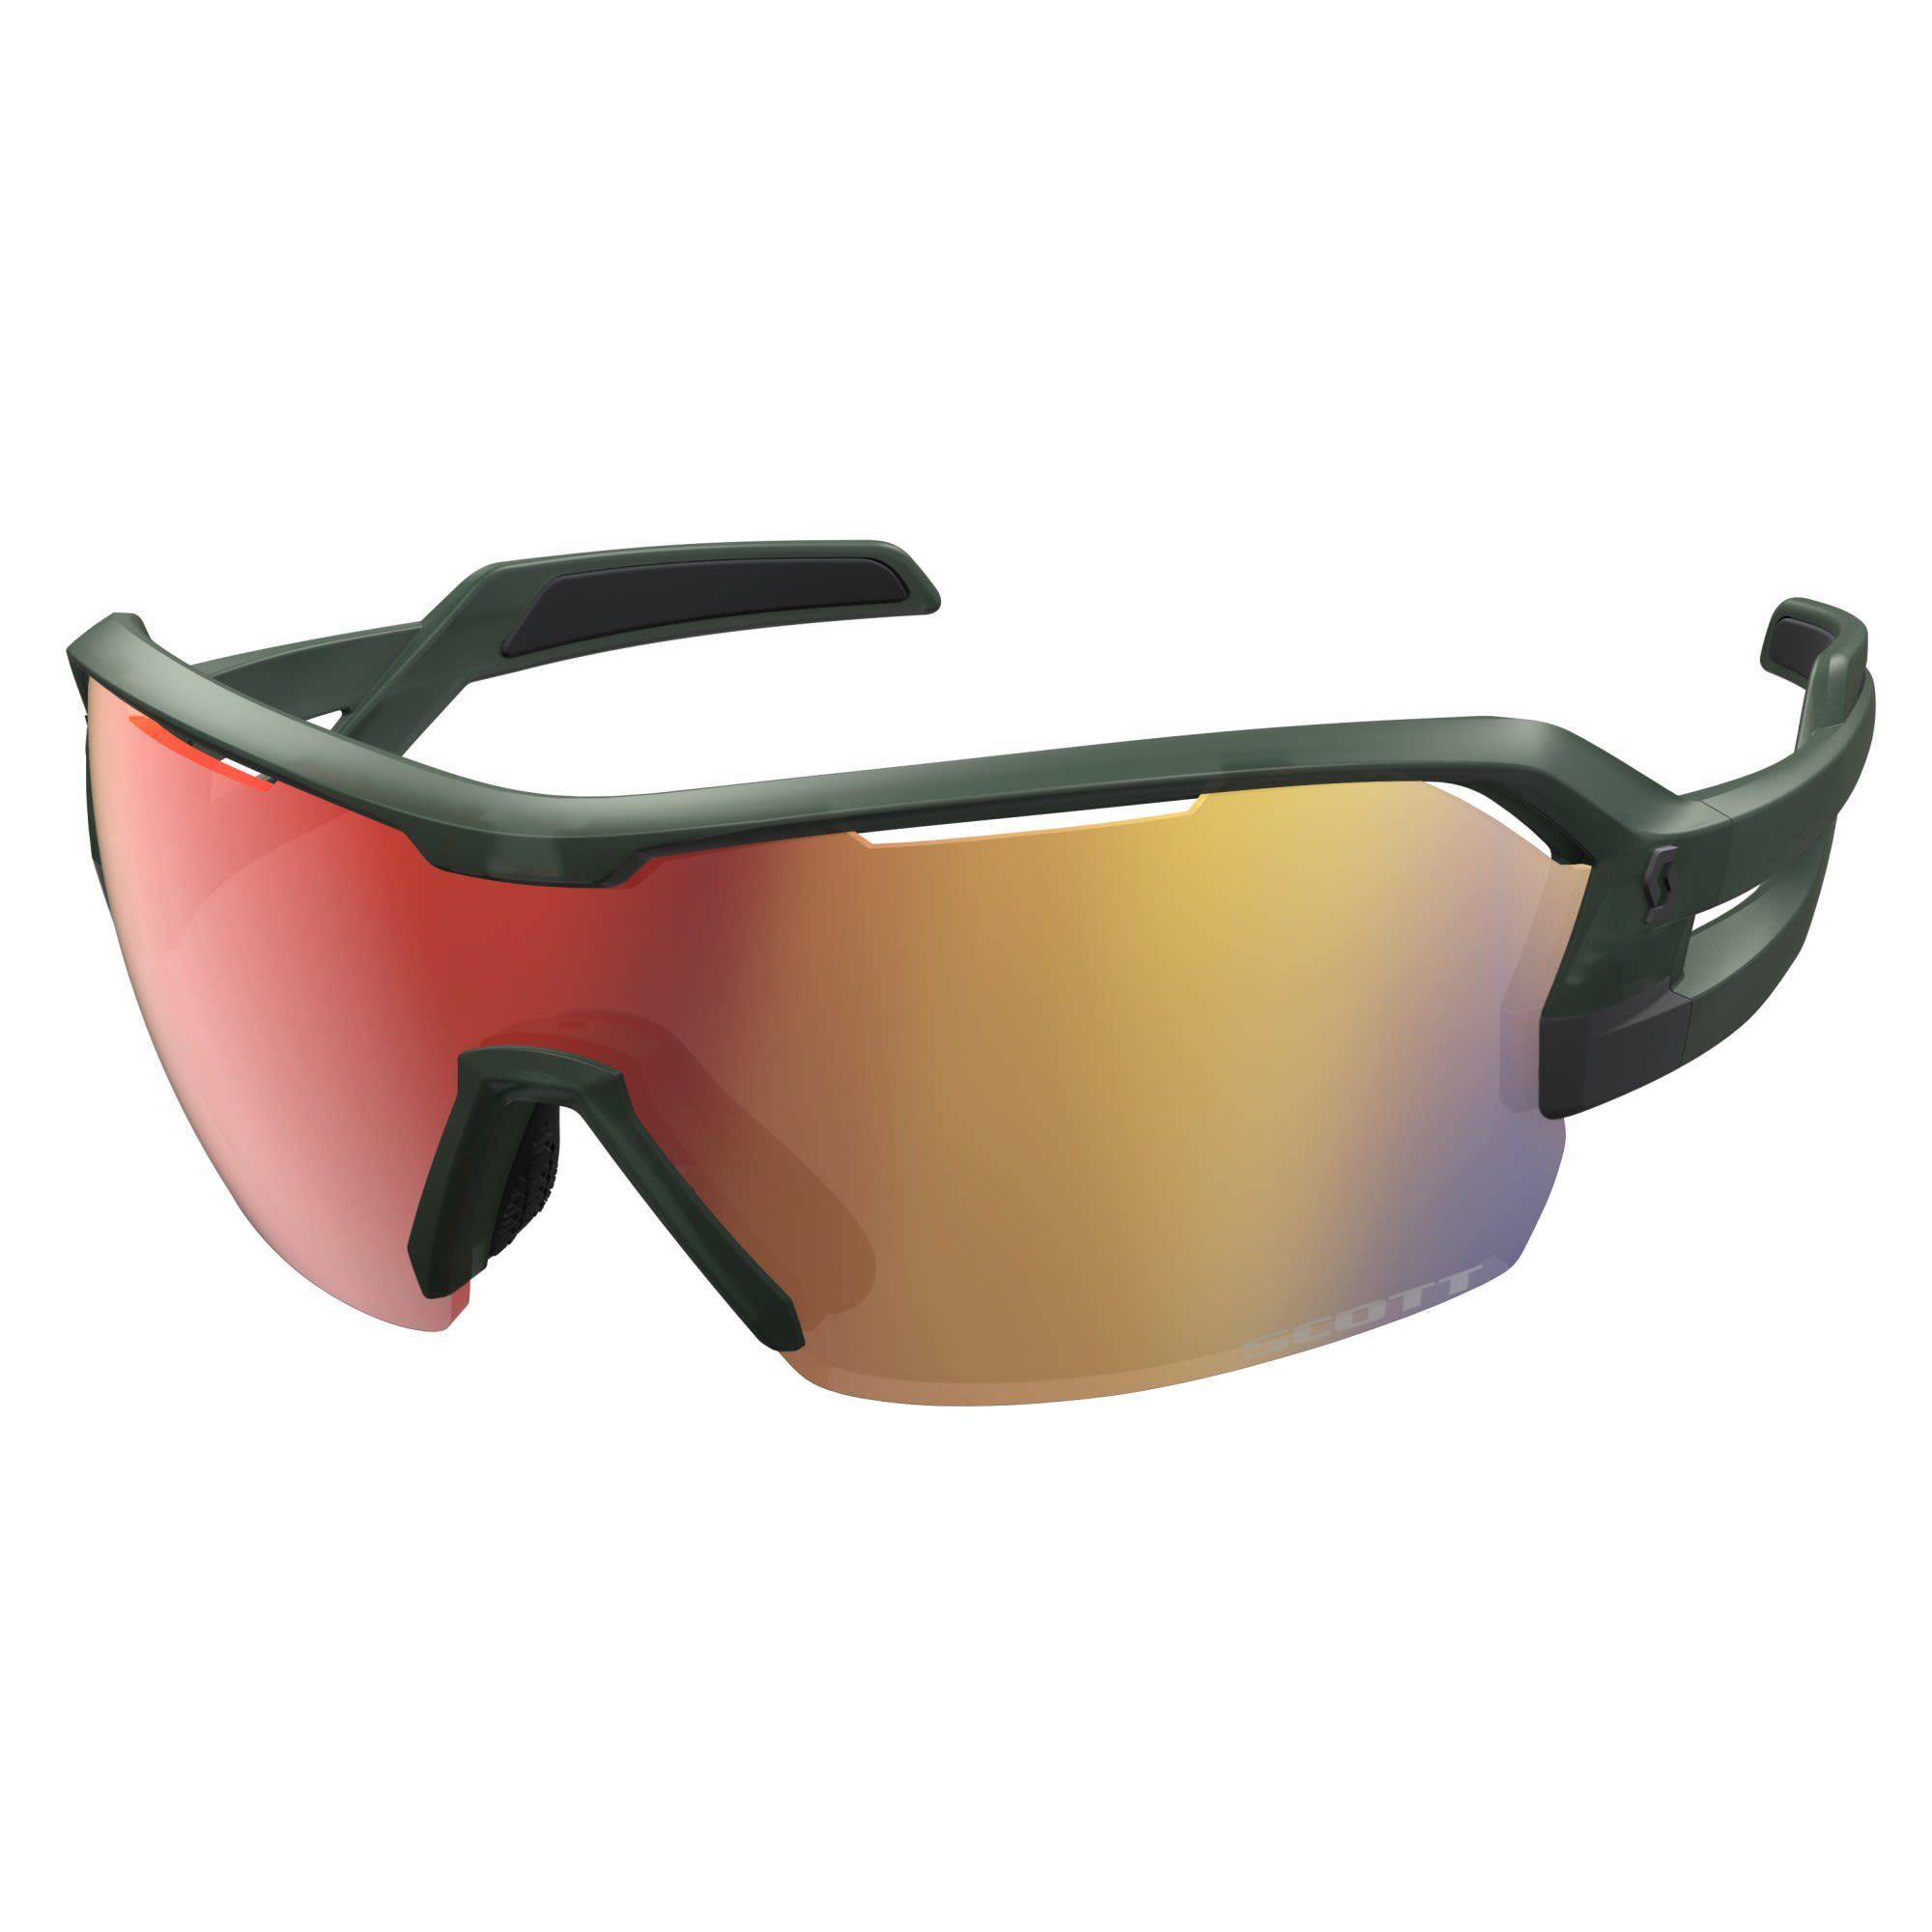 Fahrradbrille Sunglasses - Scott Red Green Enhancer Khaki - Scott Clear Spur Chrome Accessoires